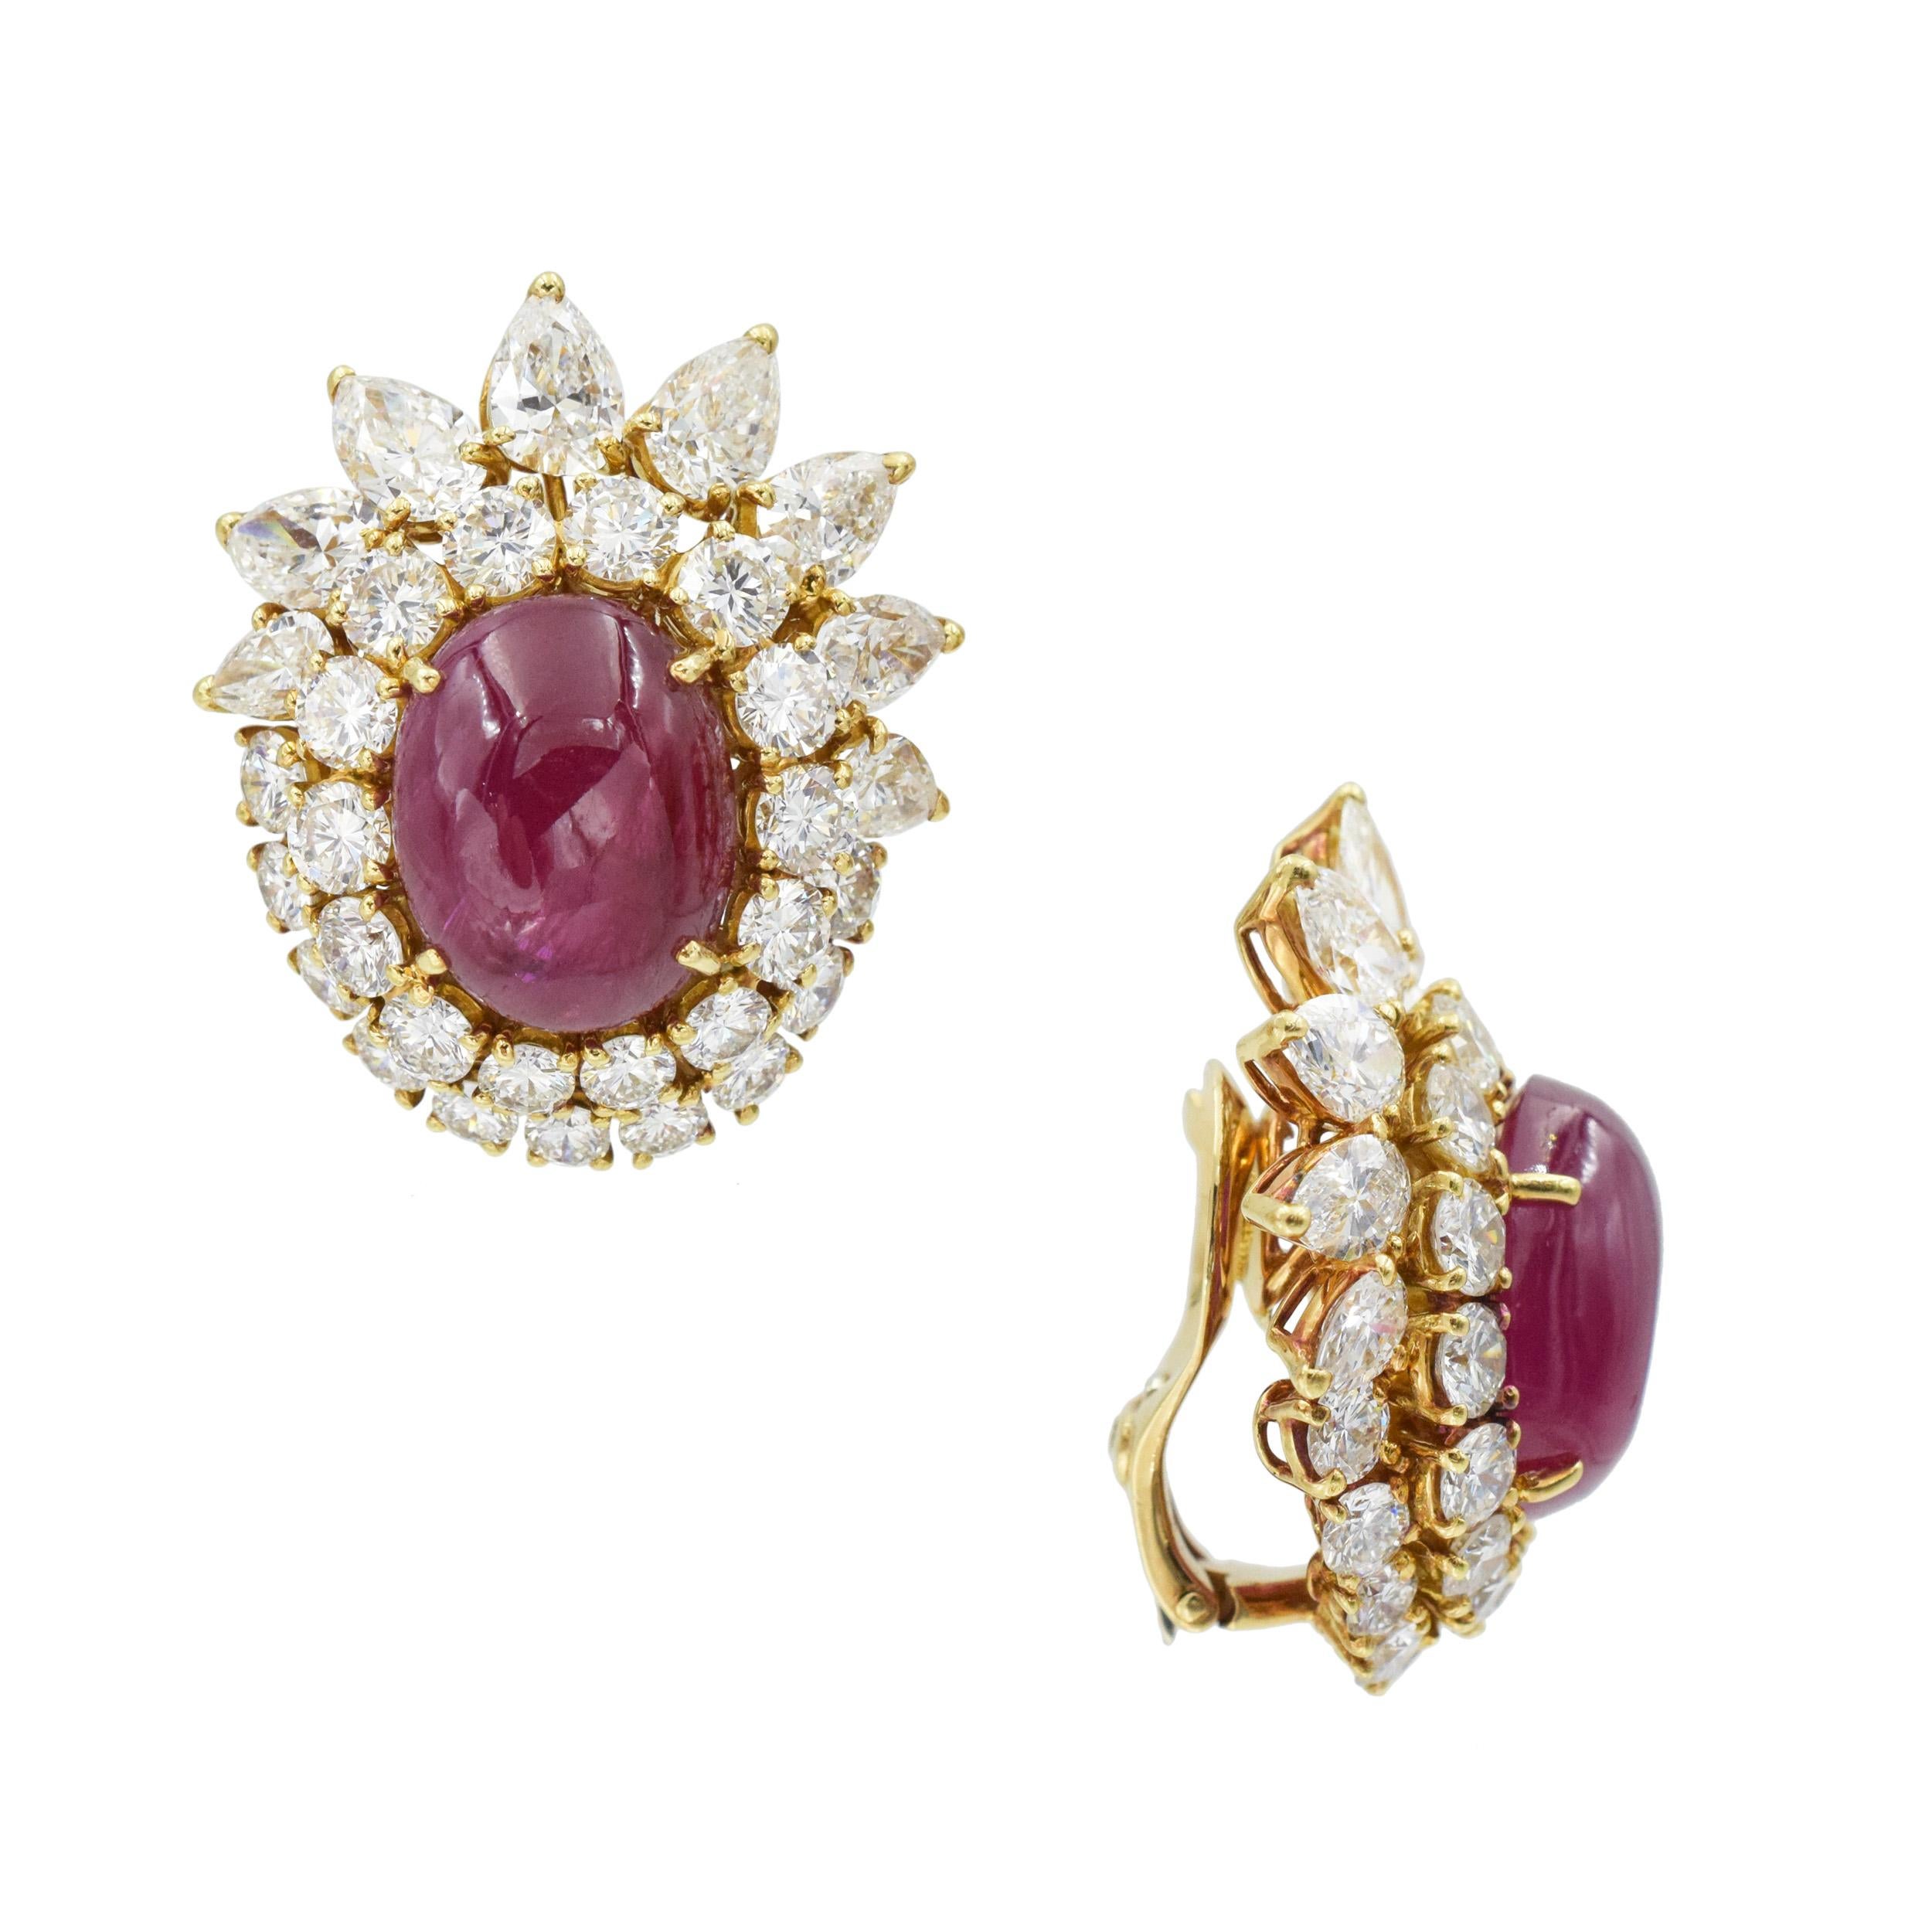 Van Cleef & Arpels Ruby and Diamond Earrings and Ring 1